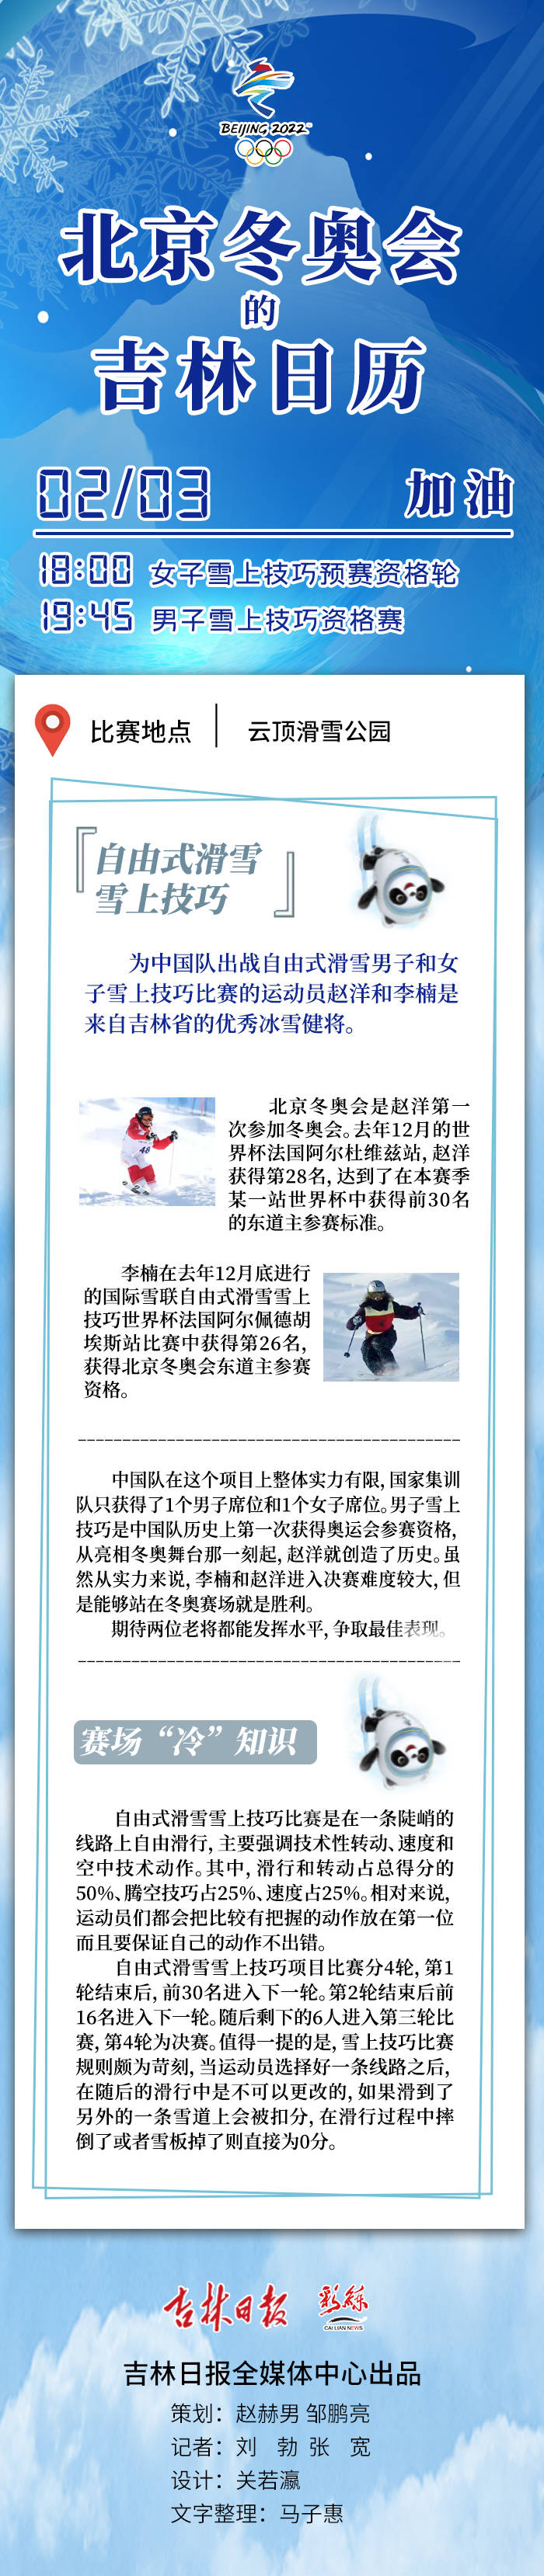 女子|北京冬奥会的吉林日历丨女子雪上技巧预赛/男子雪上技巧资格赛